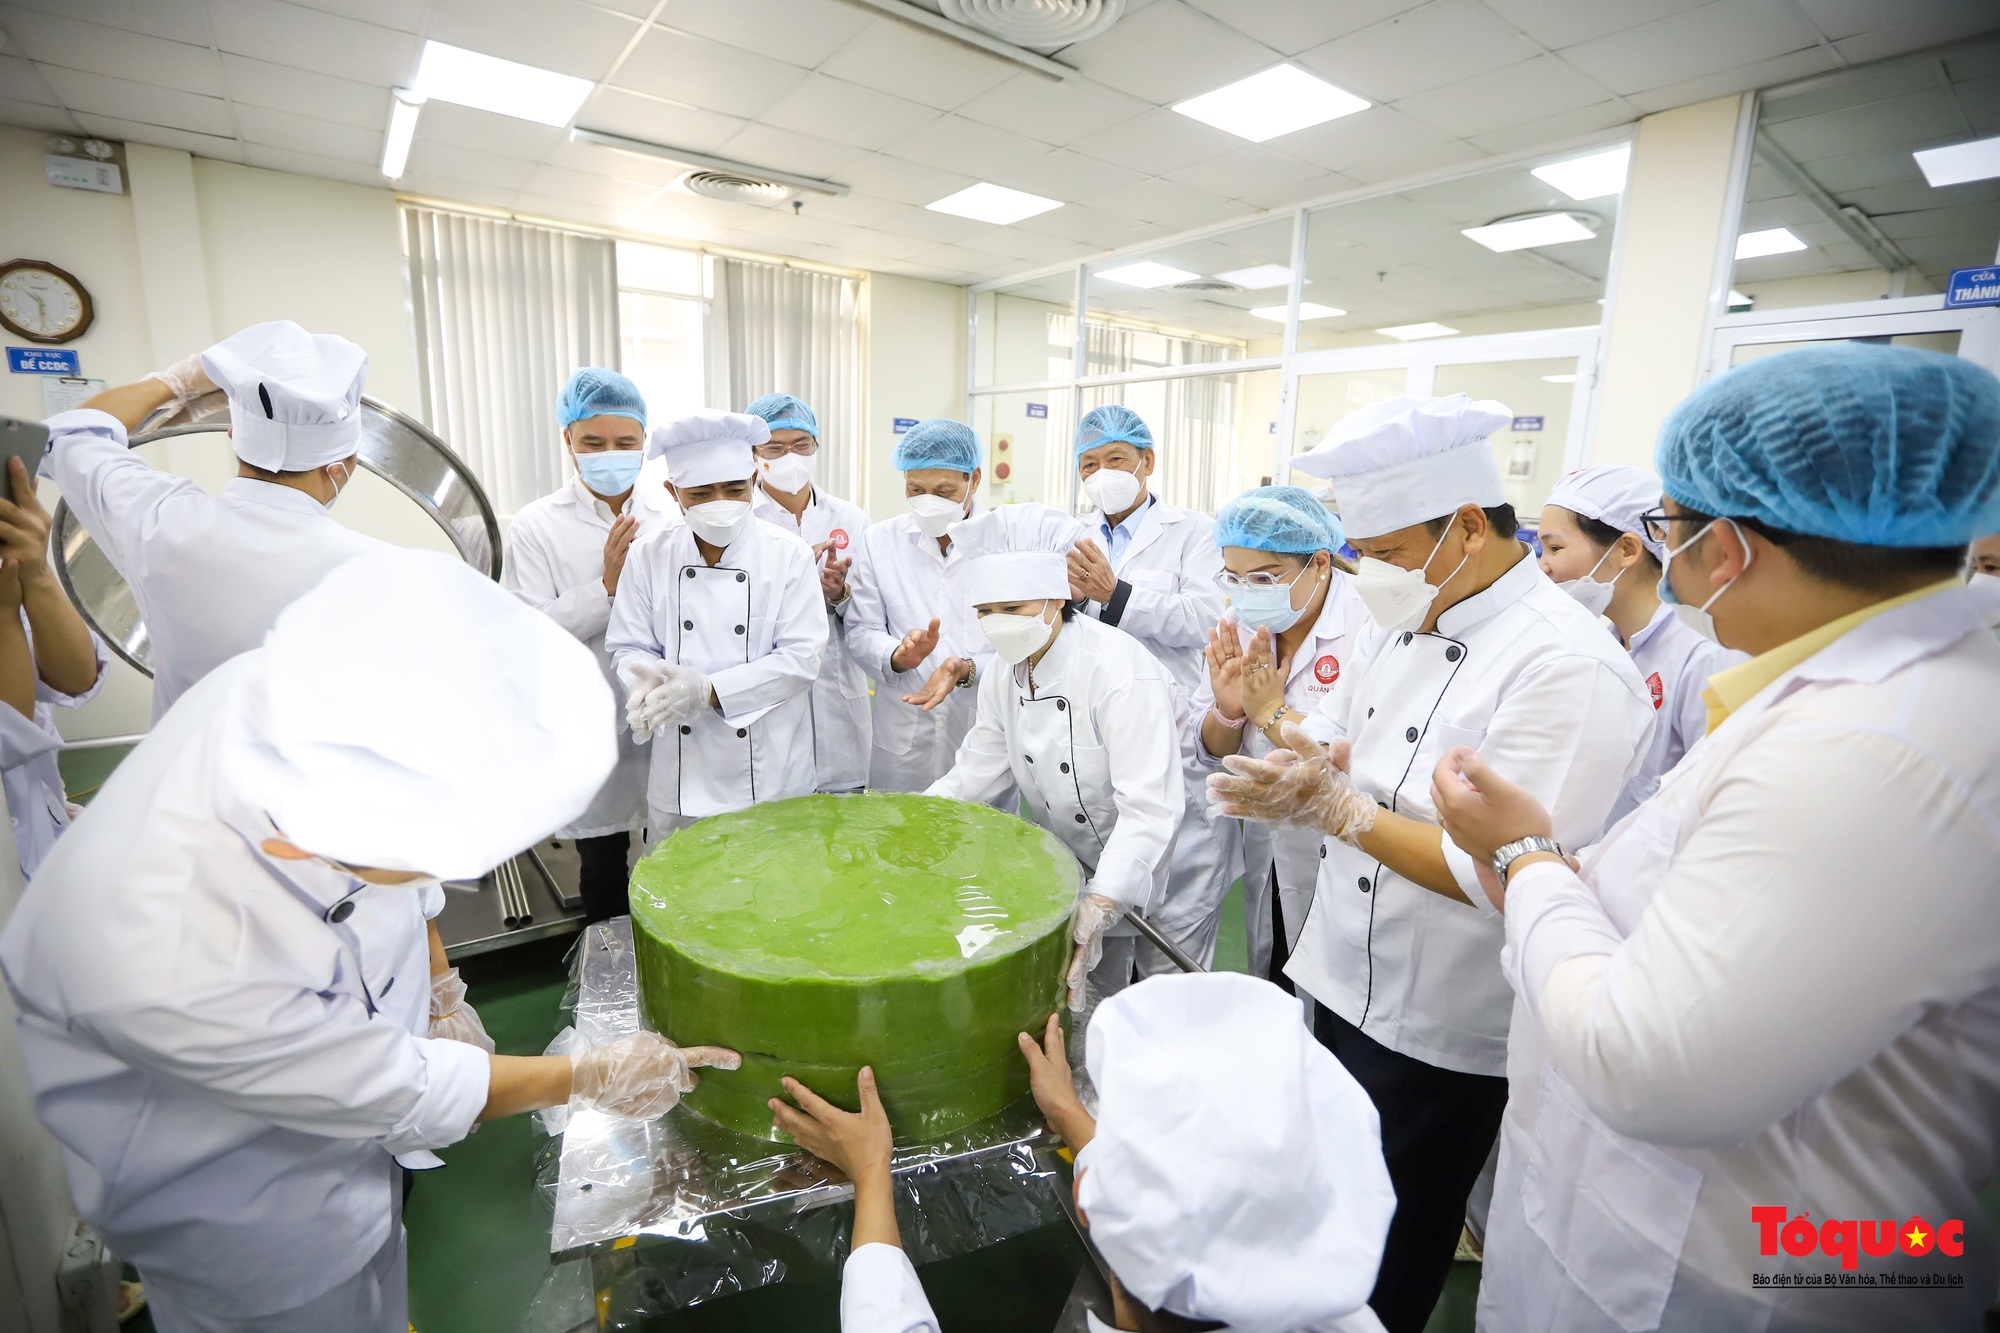 Cận cảnh công đoạn sản xuất cặp bánh cưới kỷ lục Việt Nam - Ảnh 14.